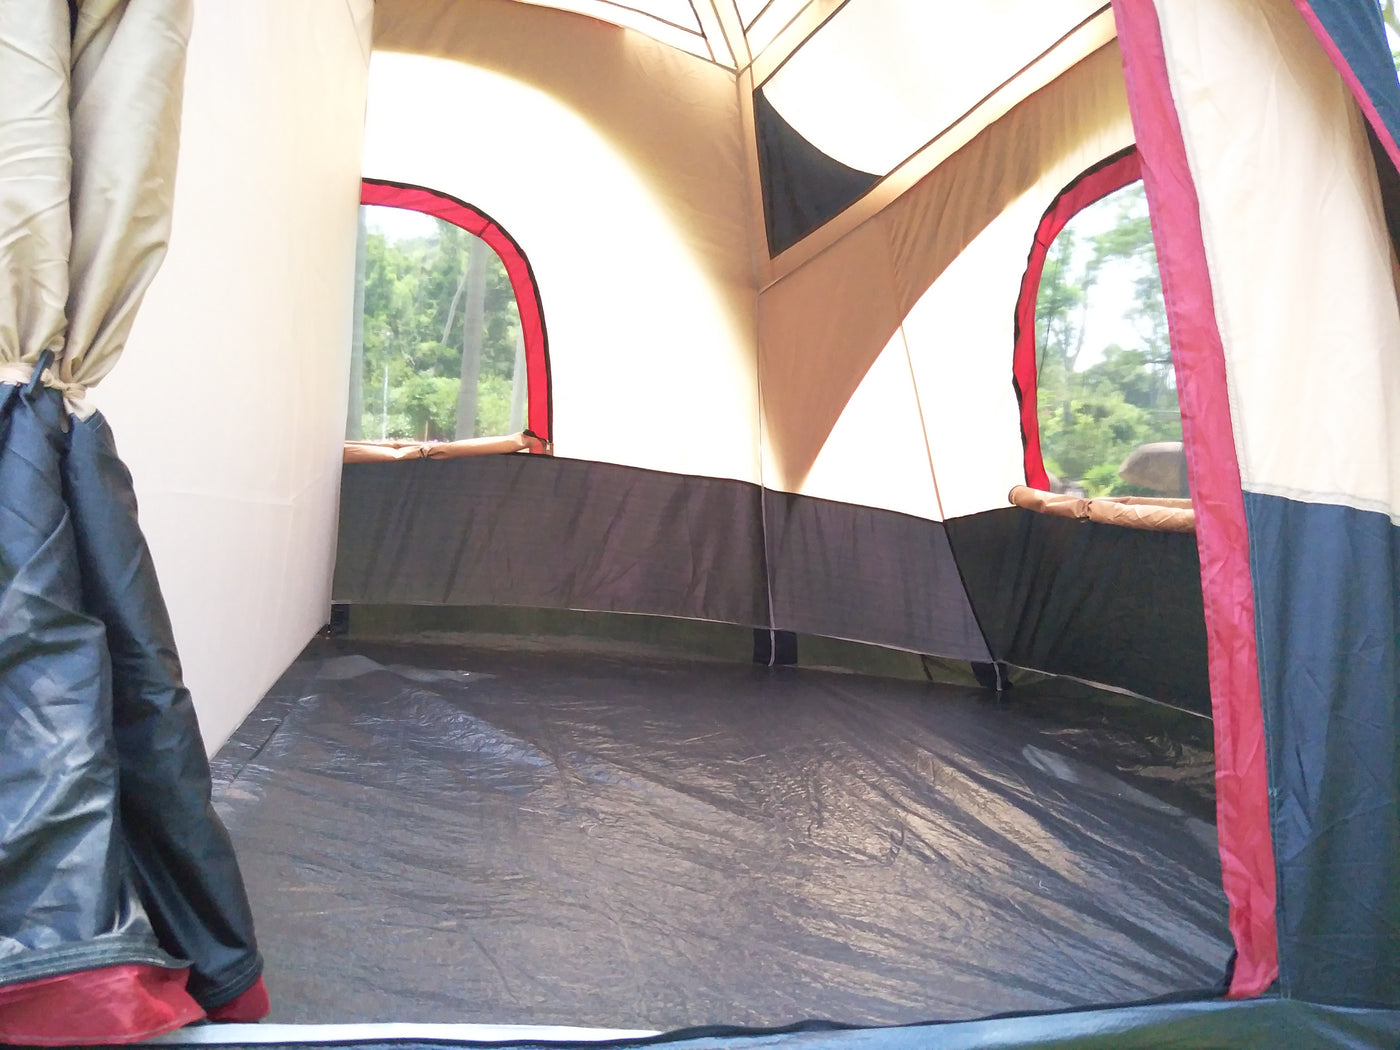 Tente familiale de cabine de cadre pour le camping extérieur de groupe et de famille